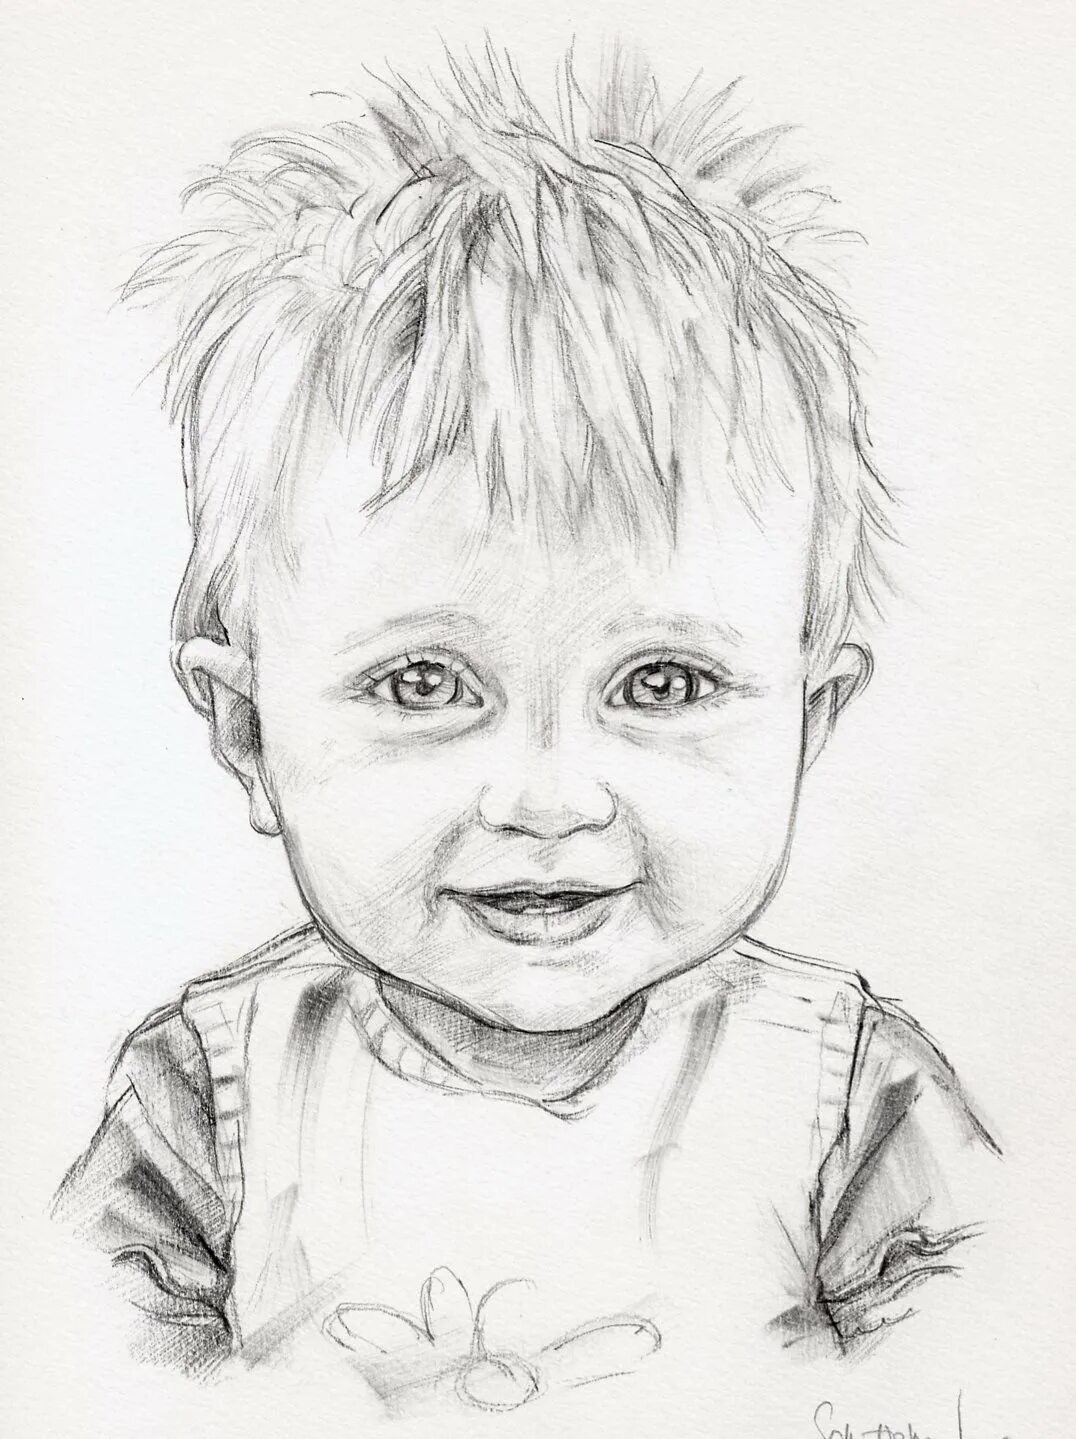 Красивый рисунок мальчика карандашом. Детские рисунки карандашом. Рисунки карандашом дл де. Портрет ребенка карандашом. Рисунки карандашом децкии.